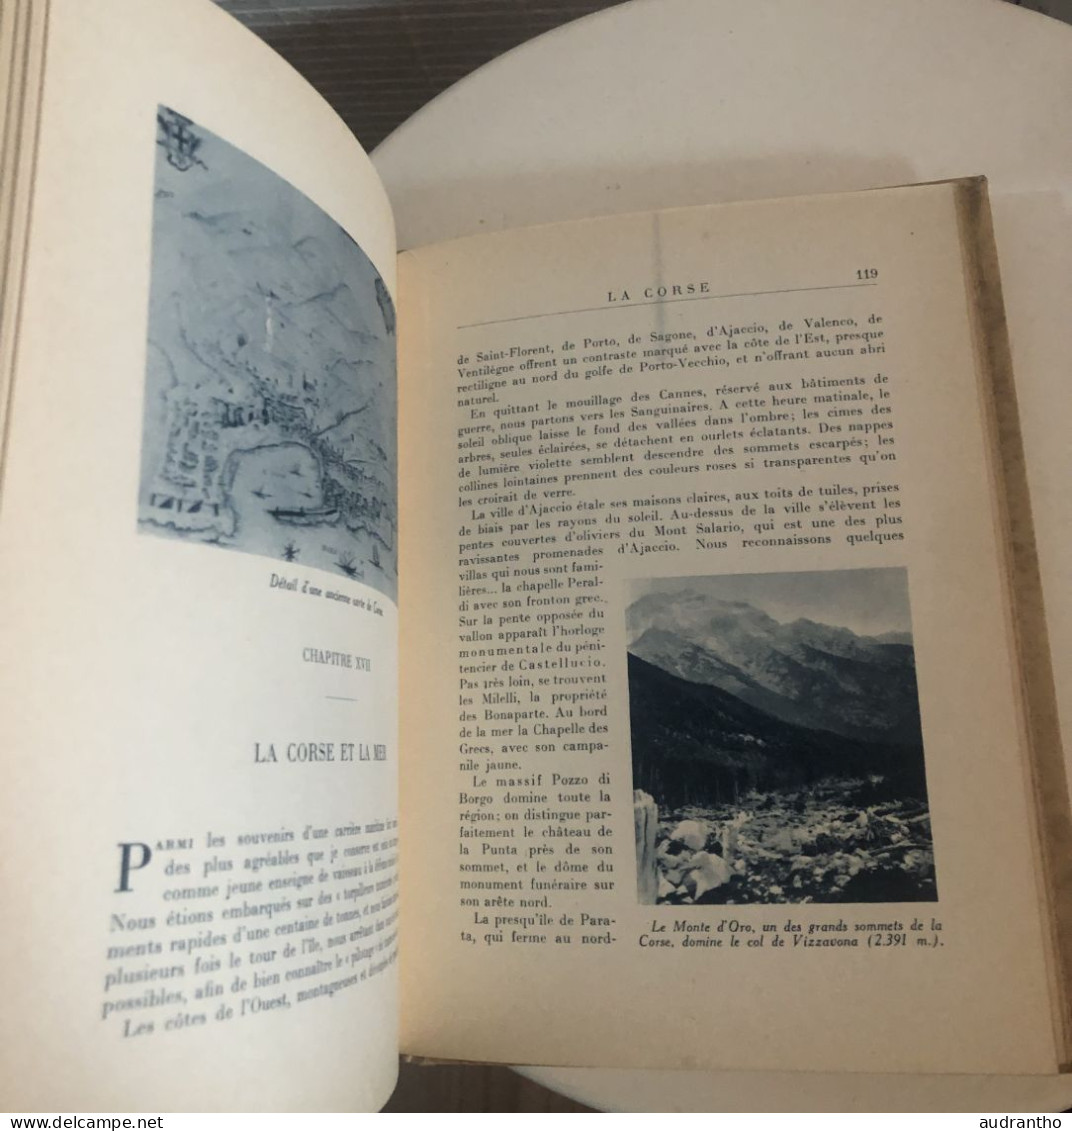 livre LA CORSE C. Alzonne - Fernad Nathan 1951- illustrations en couleur de Delécluse - collection pays et cités d'art